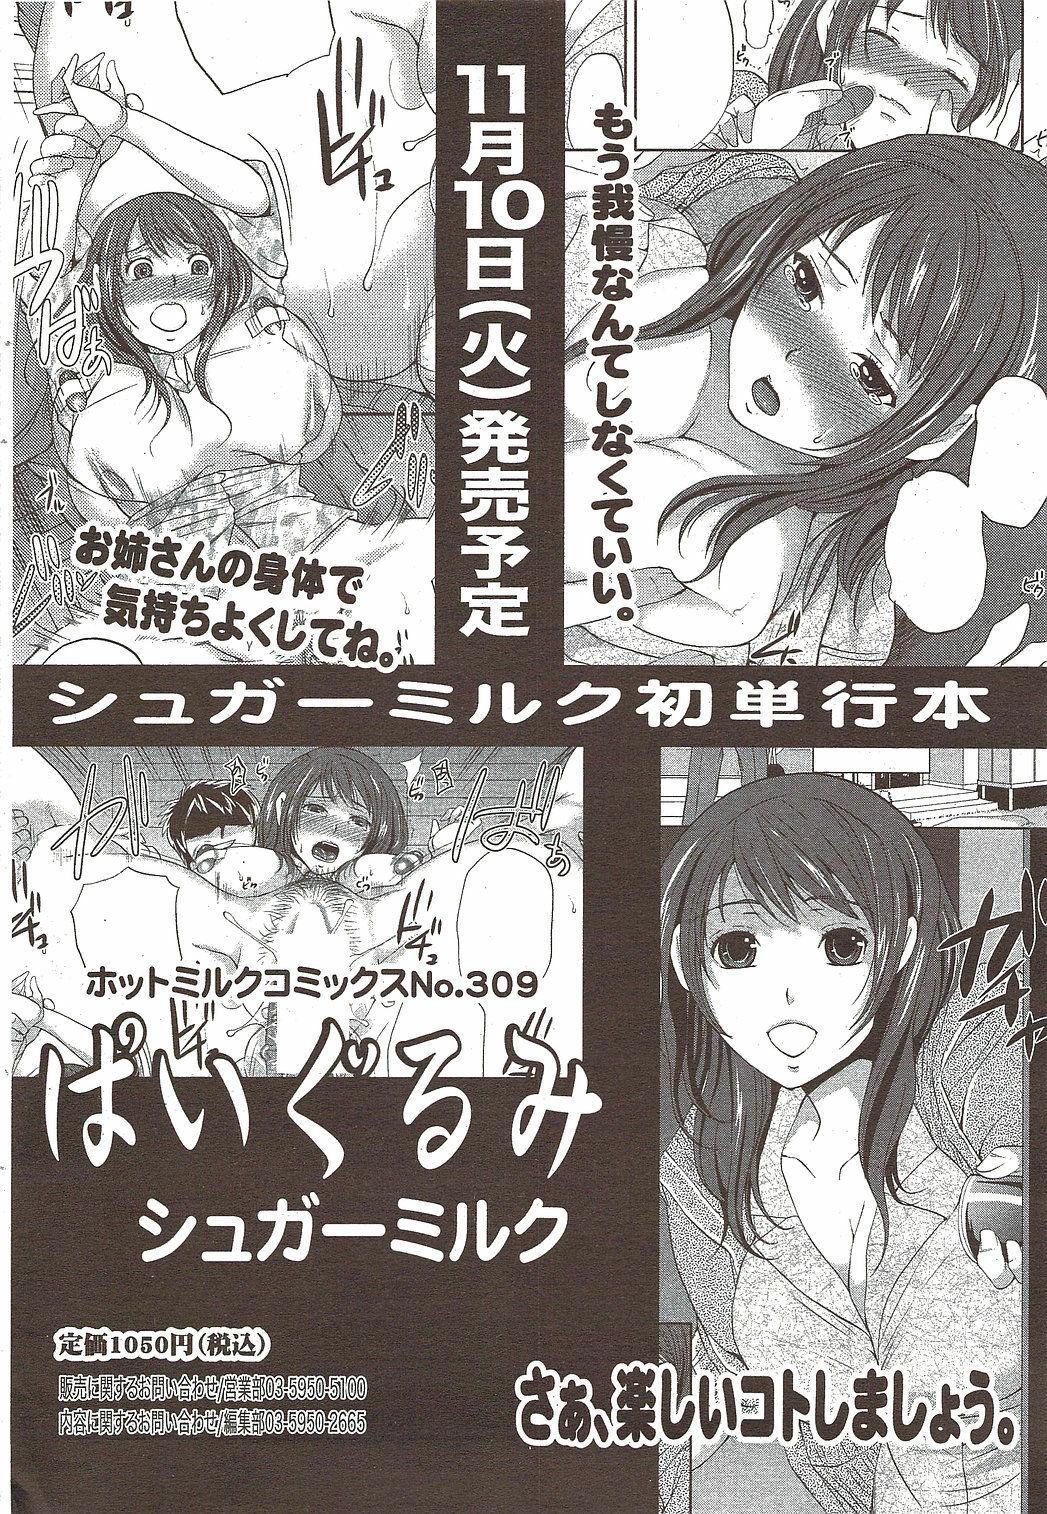 Manga Bangaichi 2009-12 page 40 full